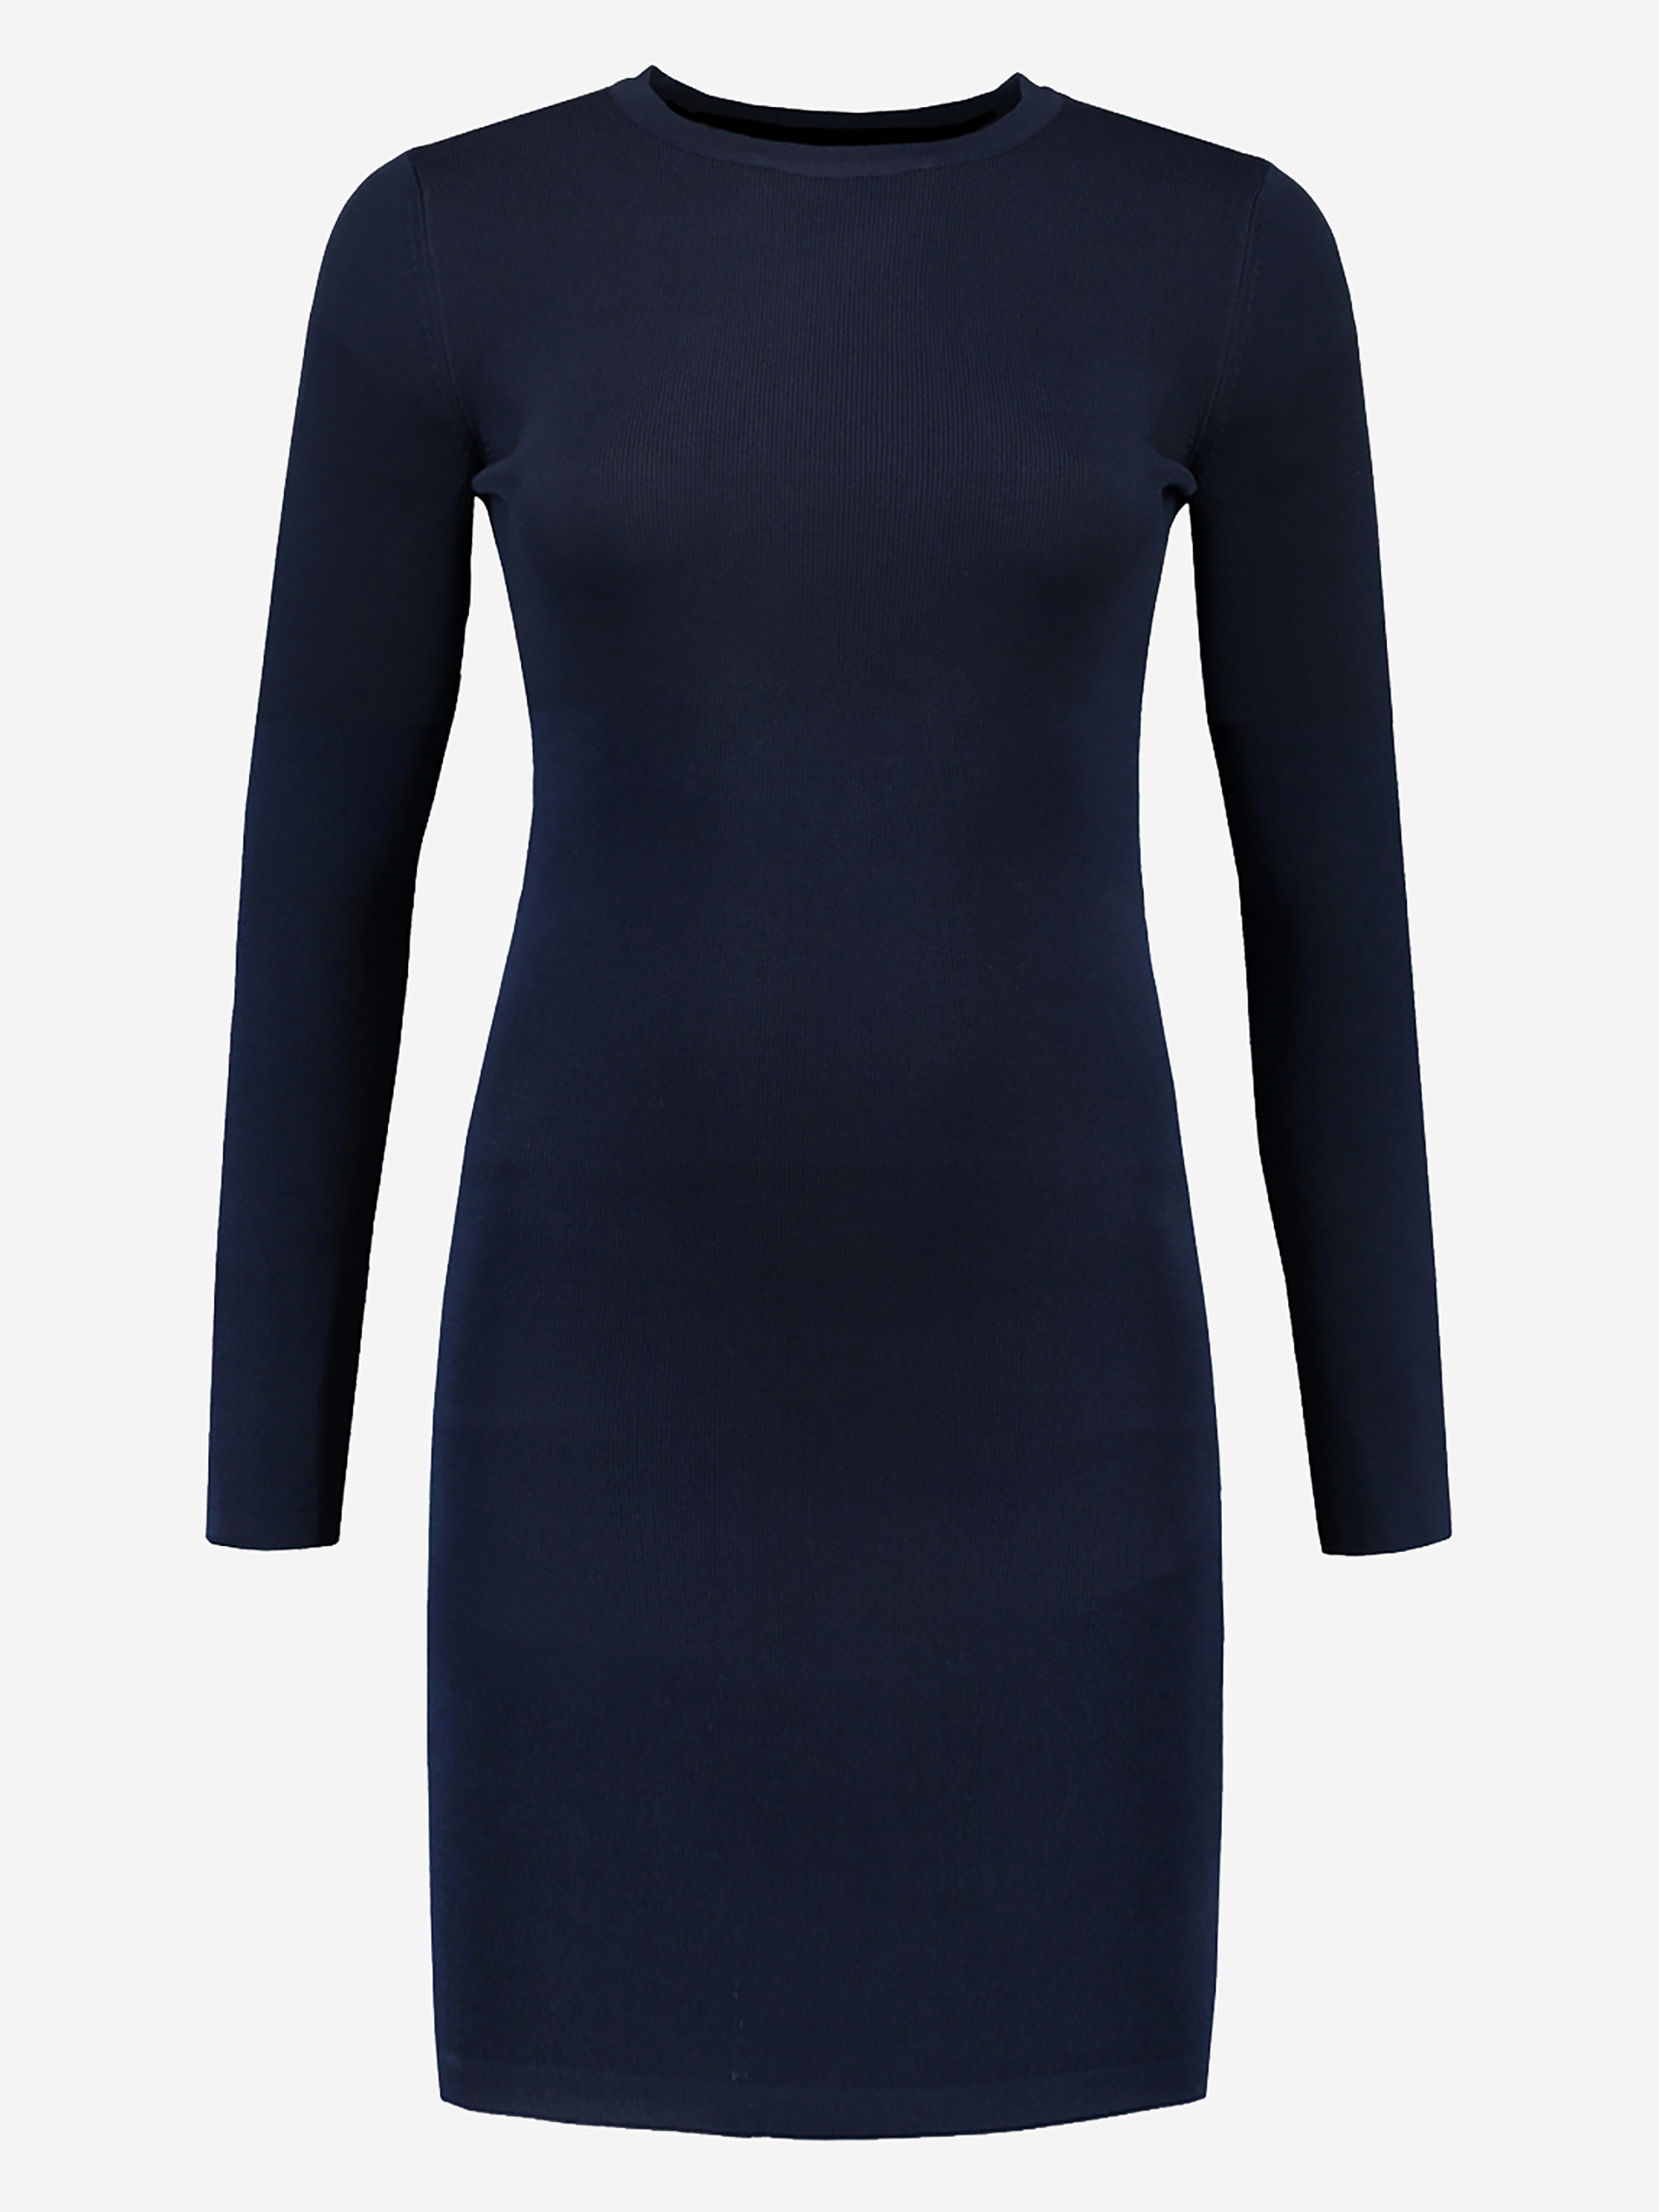 Donkerblauwe aangesloten jurk